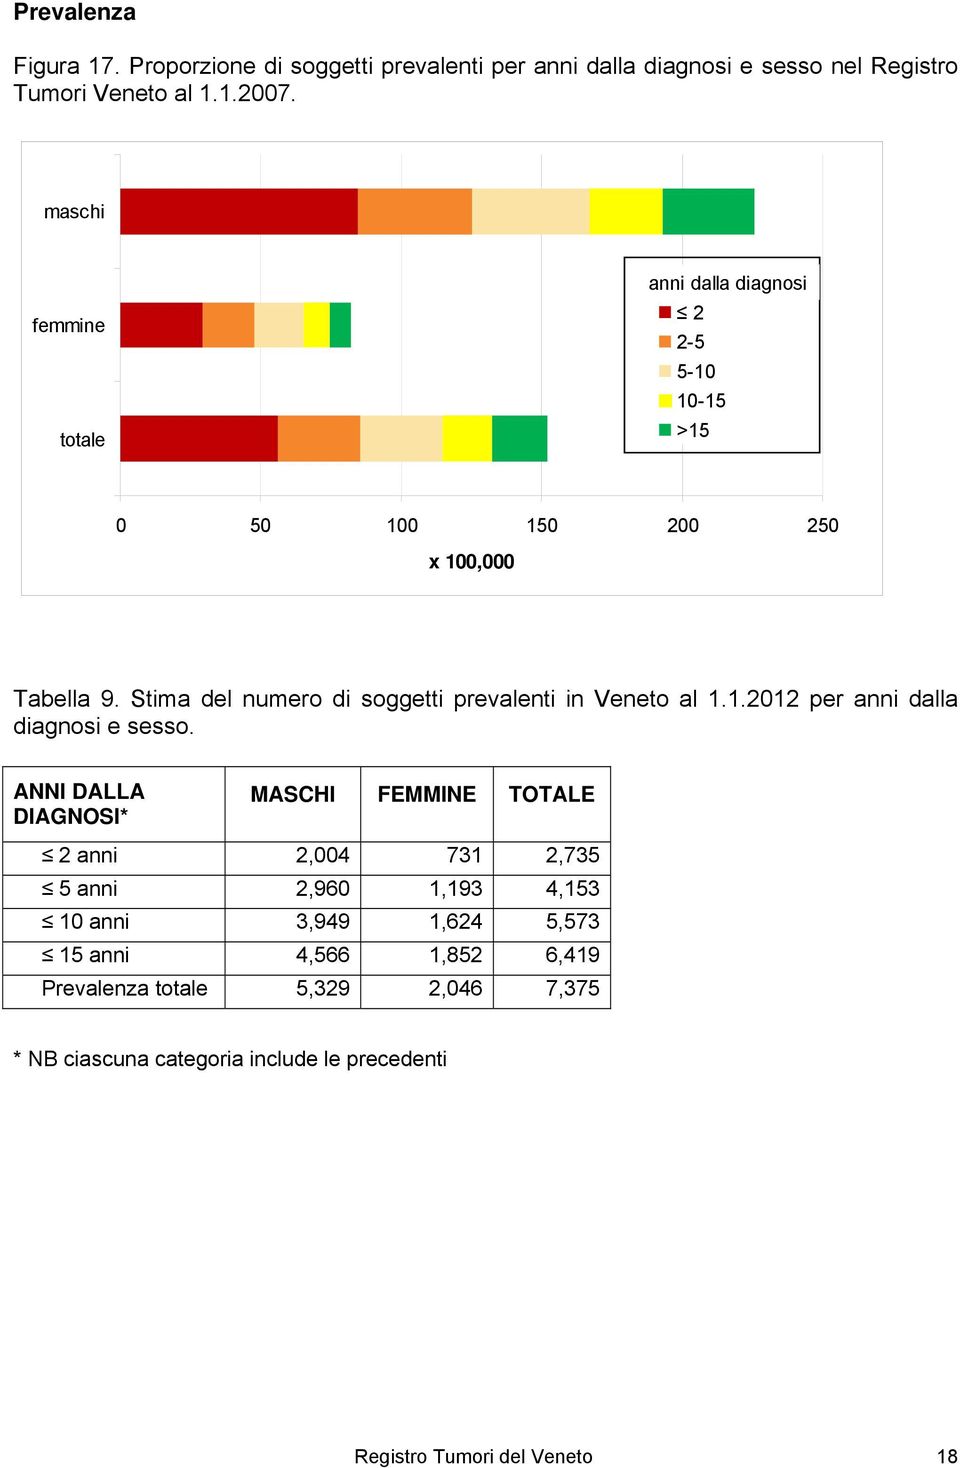 Stima del numero di soggetti prevalenti in Veneto al 1.1.2012 per anni dalla diagnosi e sesso.